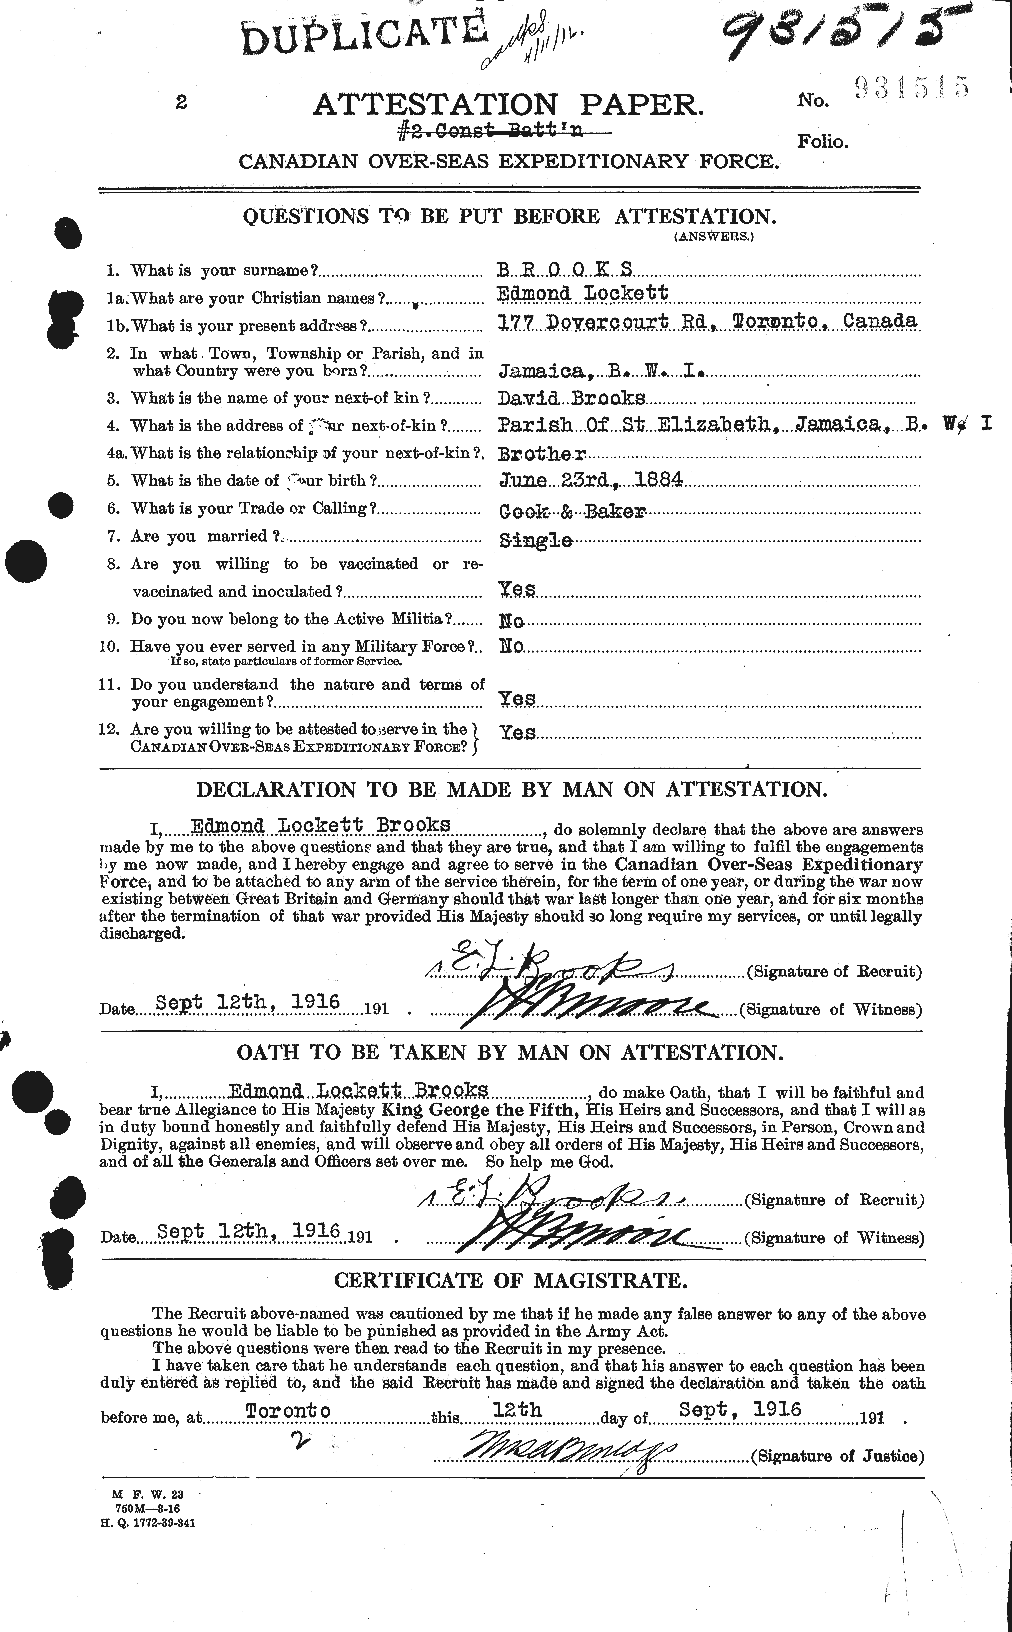 Dossiers du Personnel de la Première Guerre mondiale - CEC 261564a